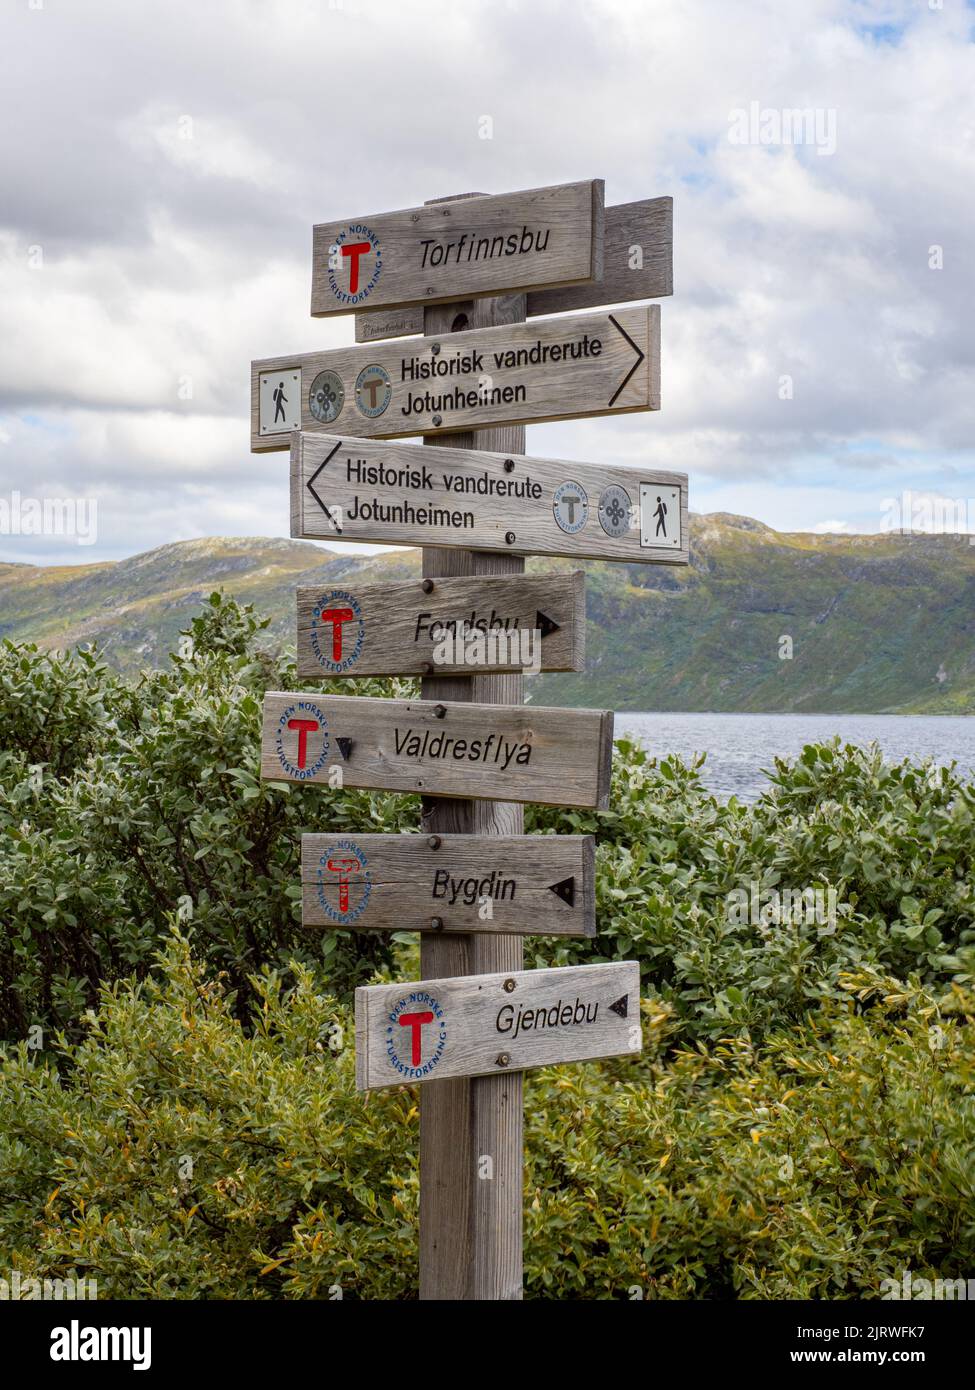 Panneau occupé à Torfinnsbu sur les rives du lac Bygdin, dans le parc national de Jotunheimen Norvège, indiquant les pistes qui se rencontrent à ce point Banque D'Images